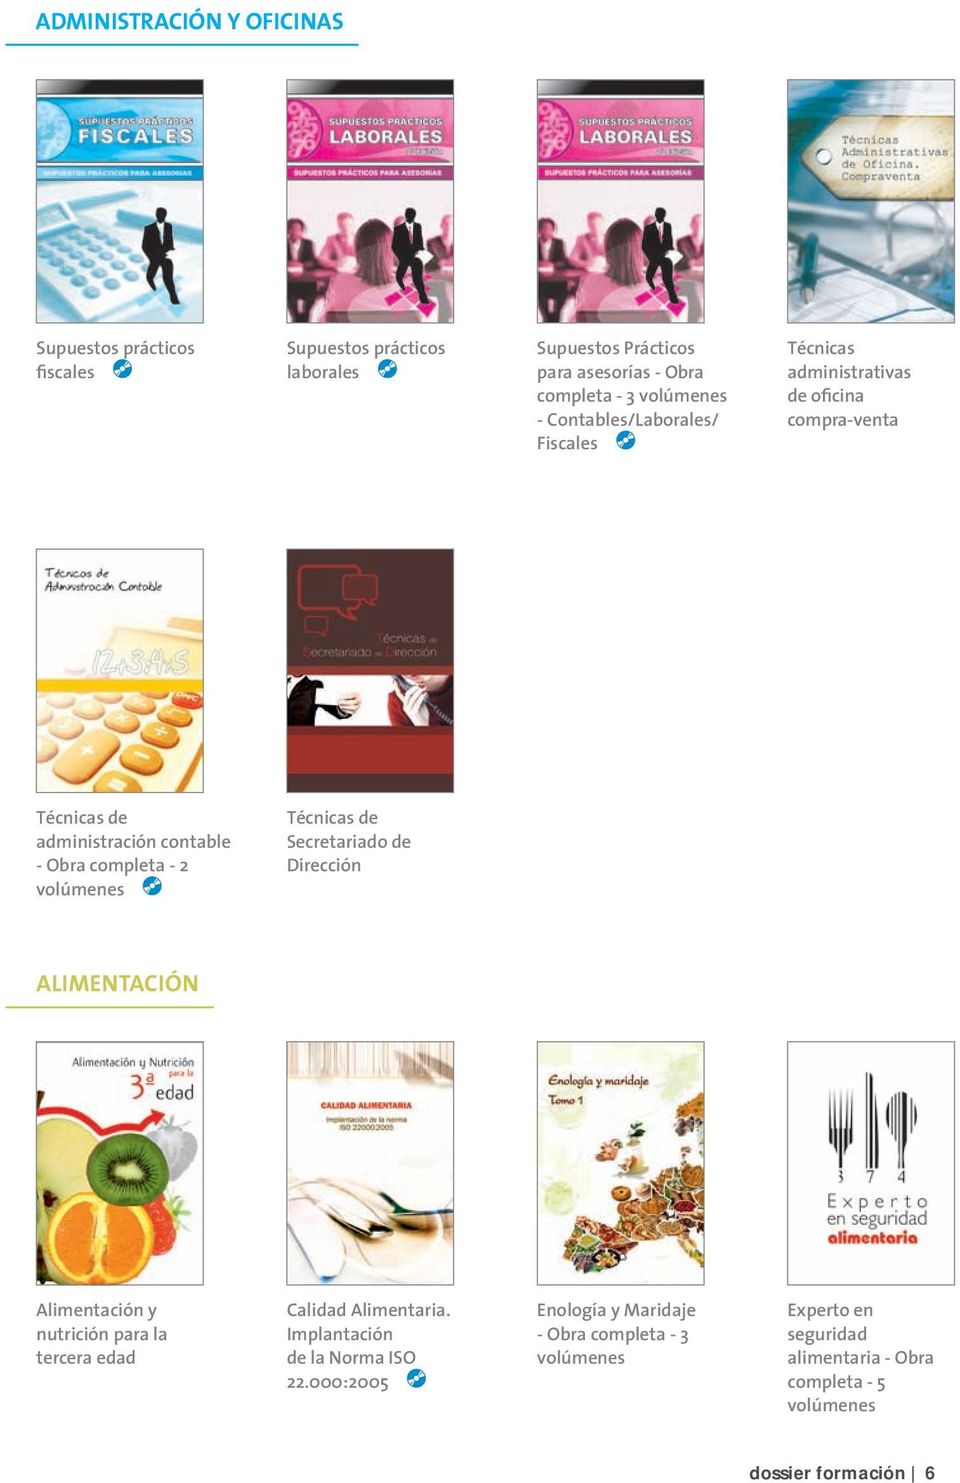 Técnicas administrativas de oficina compra-venta Enología y Maridaje - Obra completa - 3 volúmenes Experto en seguridad alimentaria - Obra